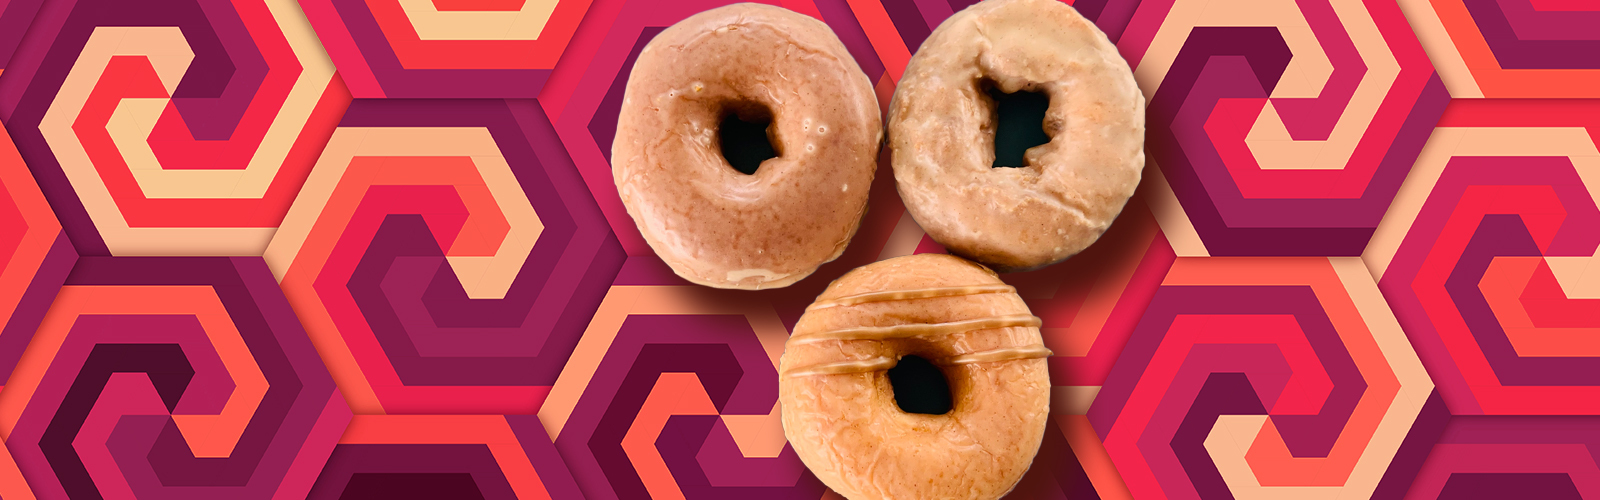 donuts-tf-uproxx.jpg